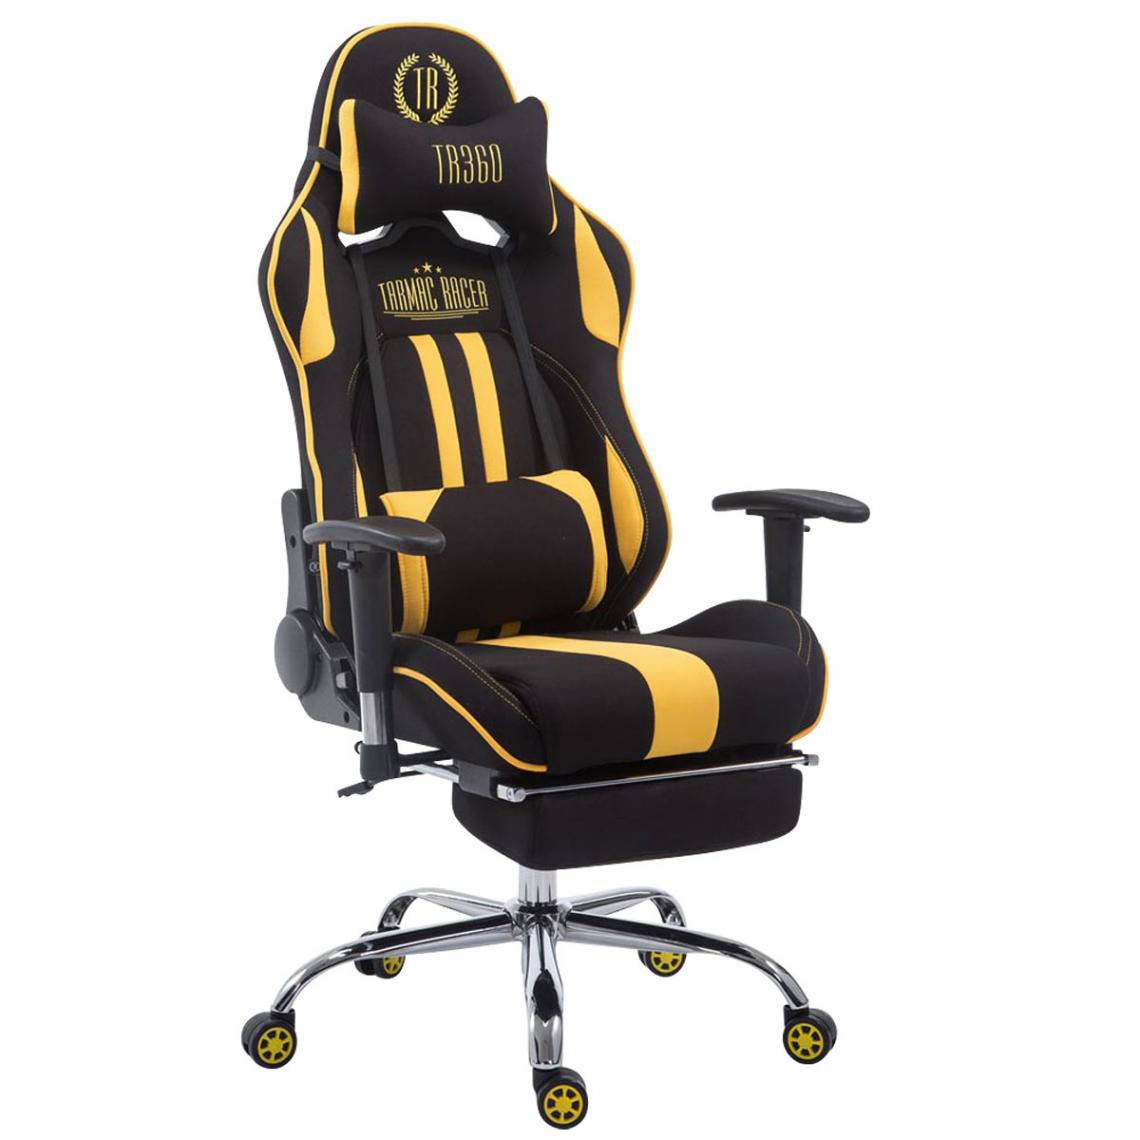 Icaverne - Contemporain Chaise de bureau serie Luanda Limit V2 en tissu avec repose-pieds couleur noir jaune - Chaises